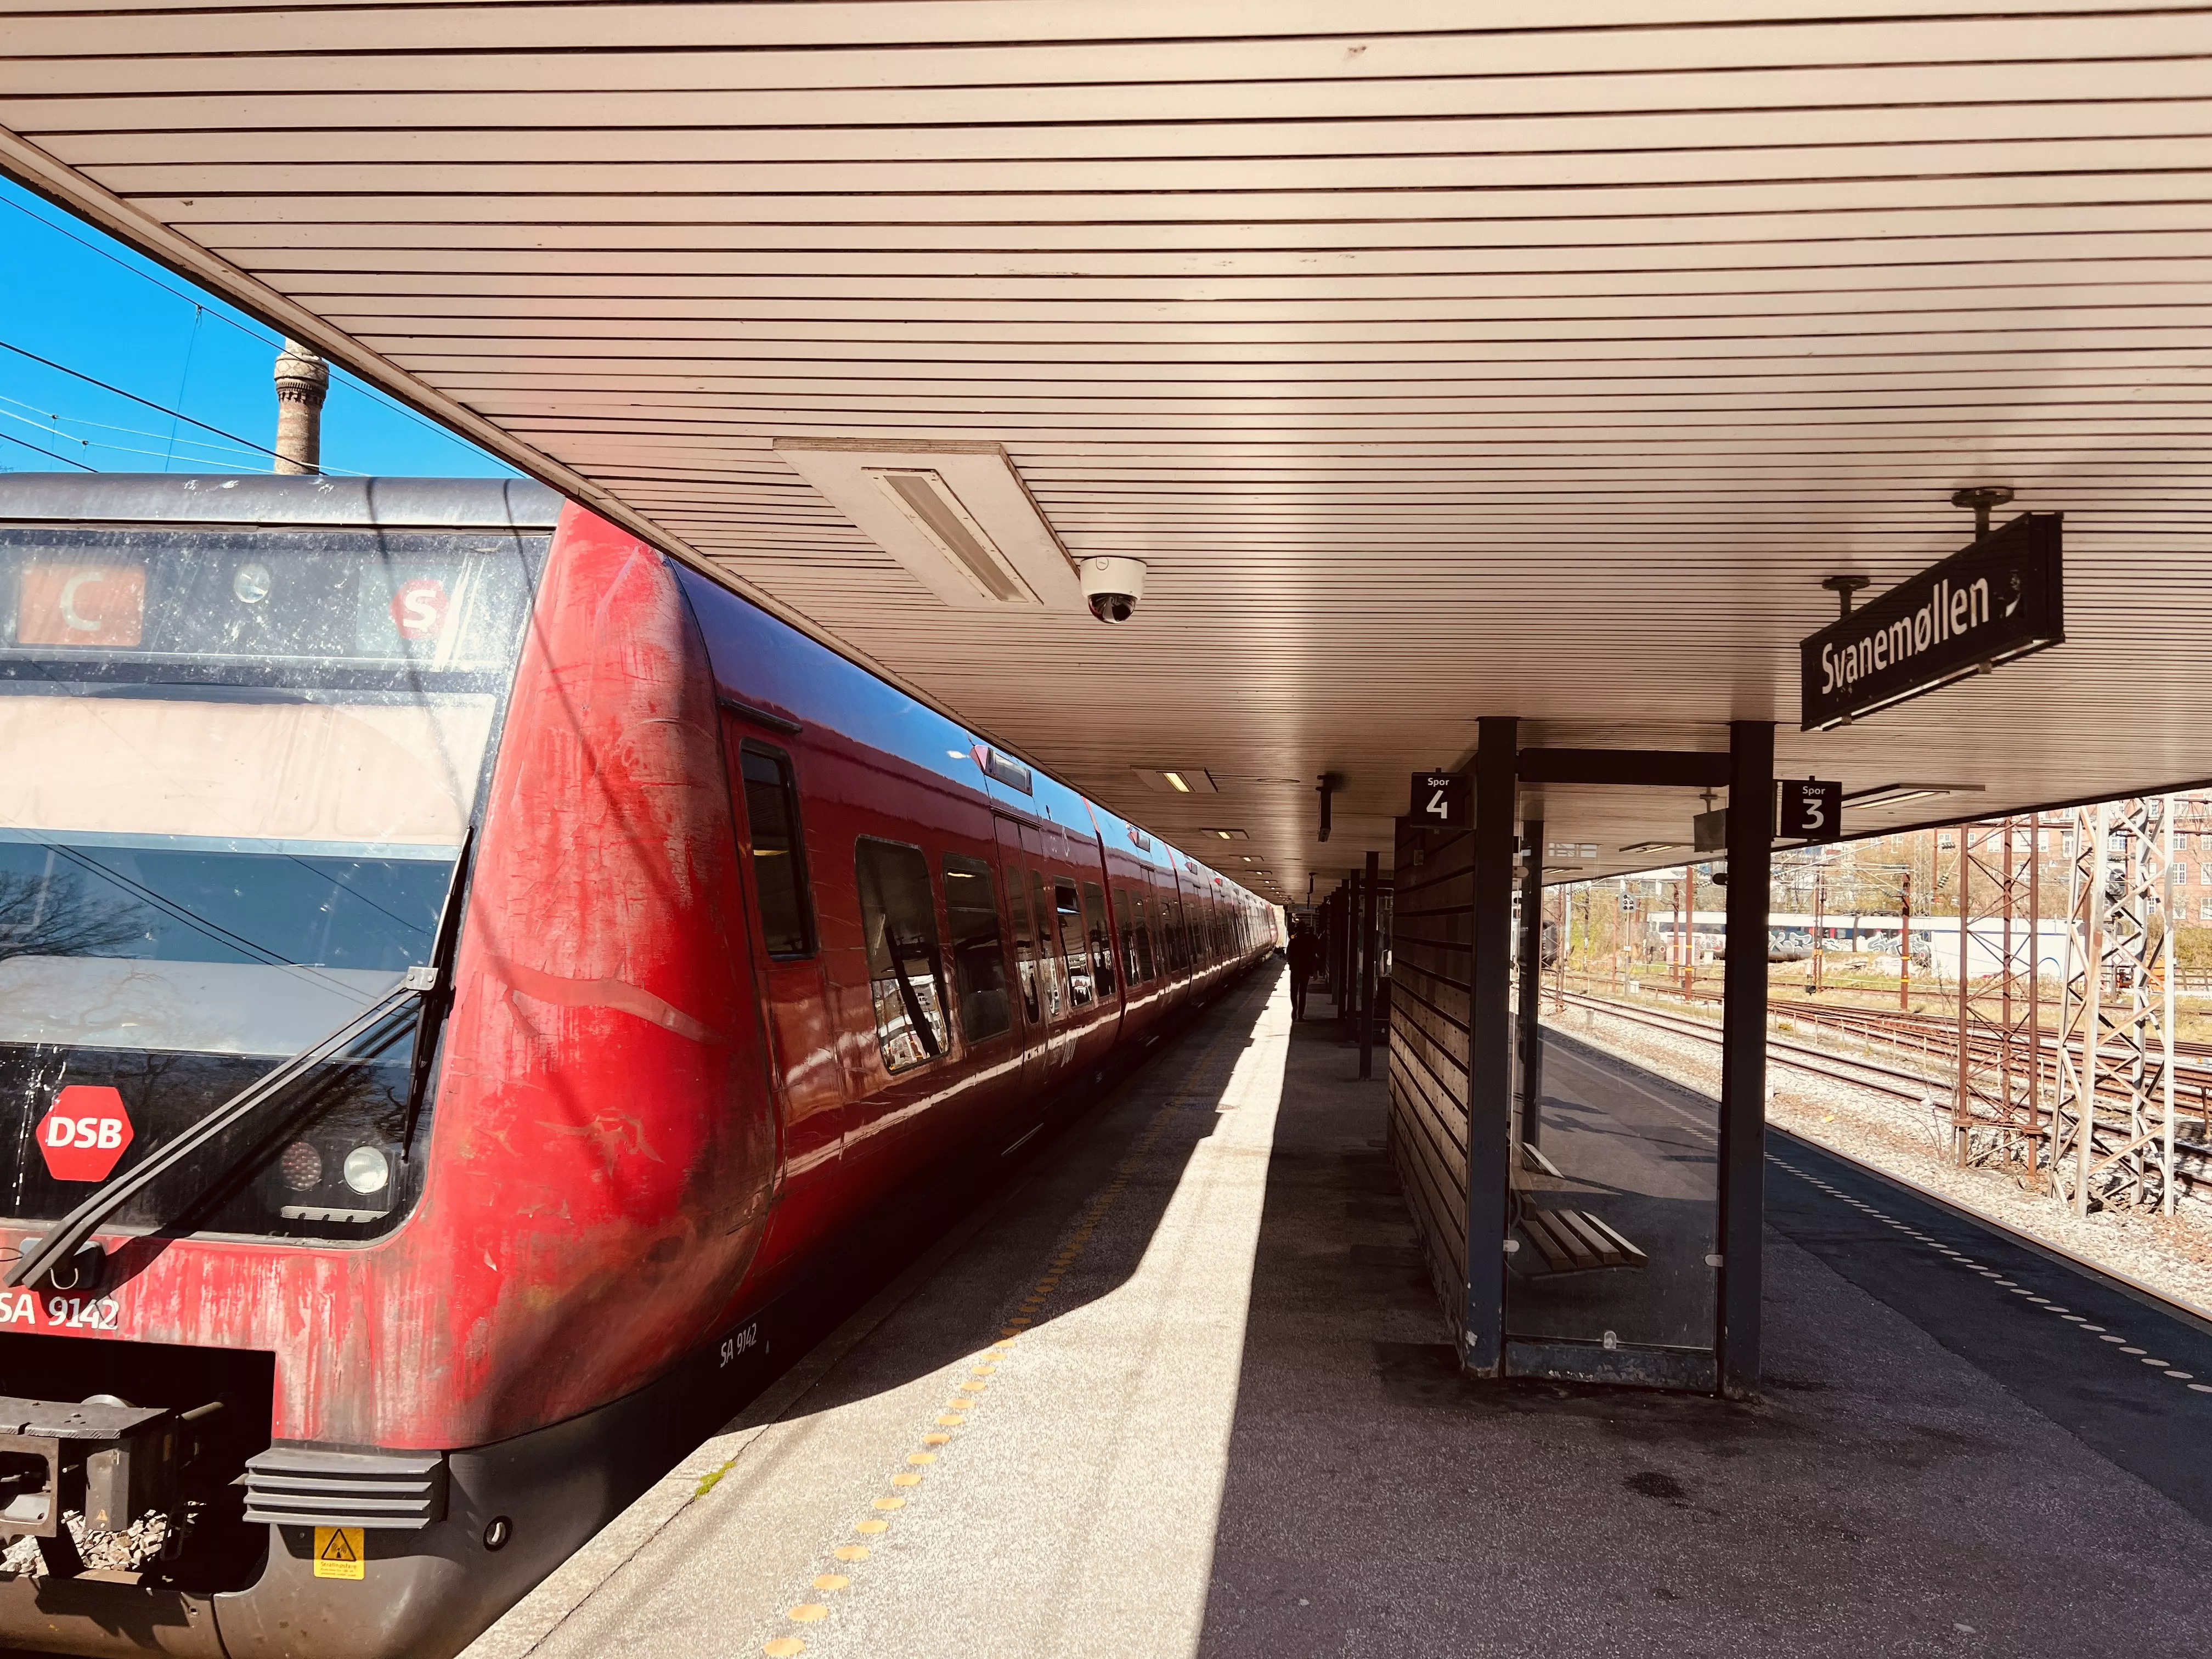 Billede af tog ud for Svanemøllen Station.